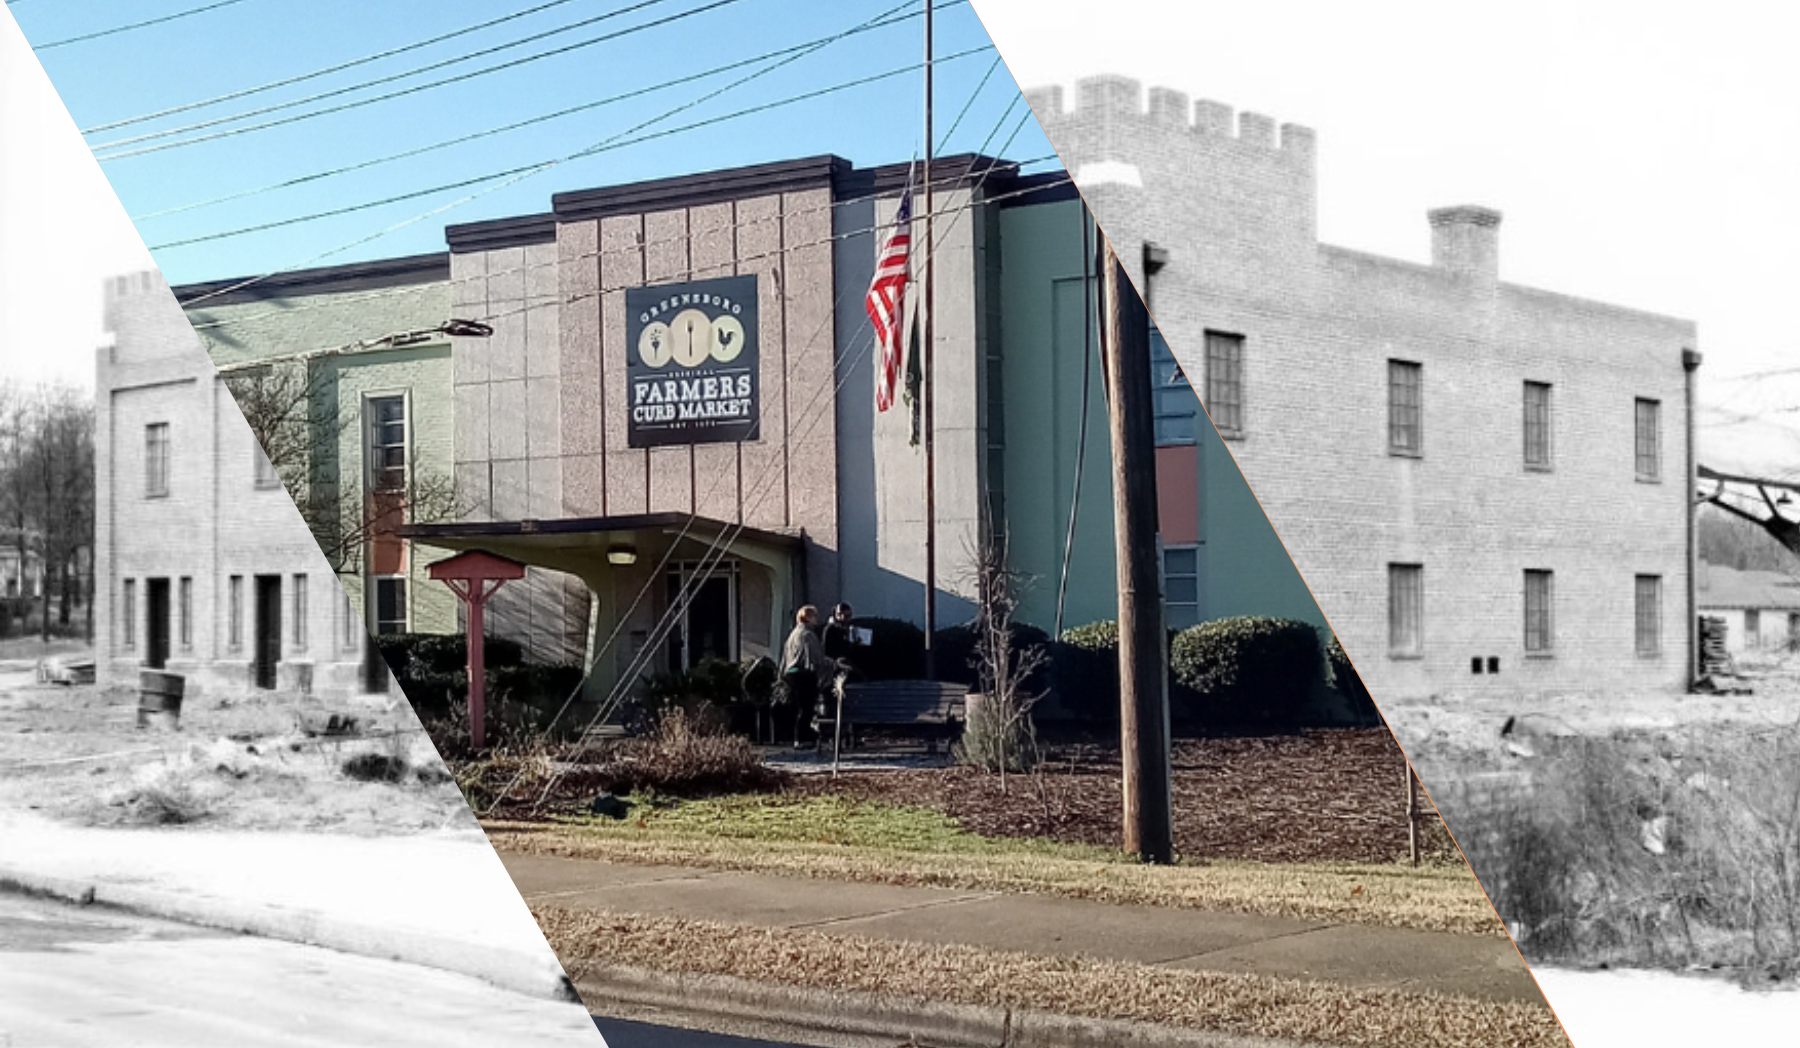 Historic Greensboro Farmers Curb Market Celebrates 150th Anniversary